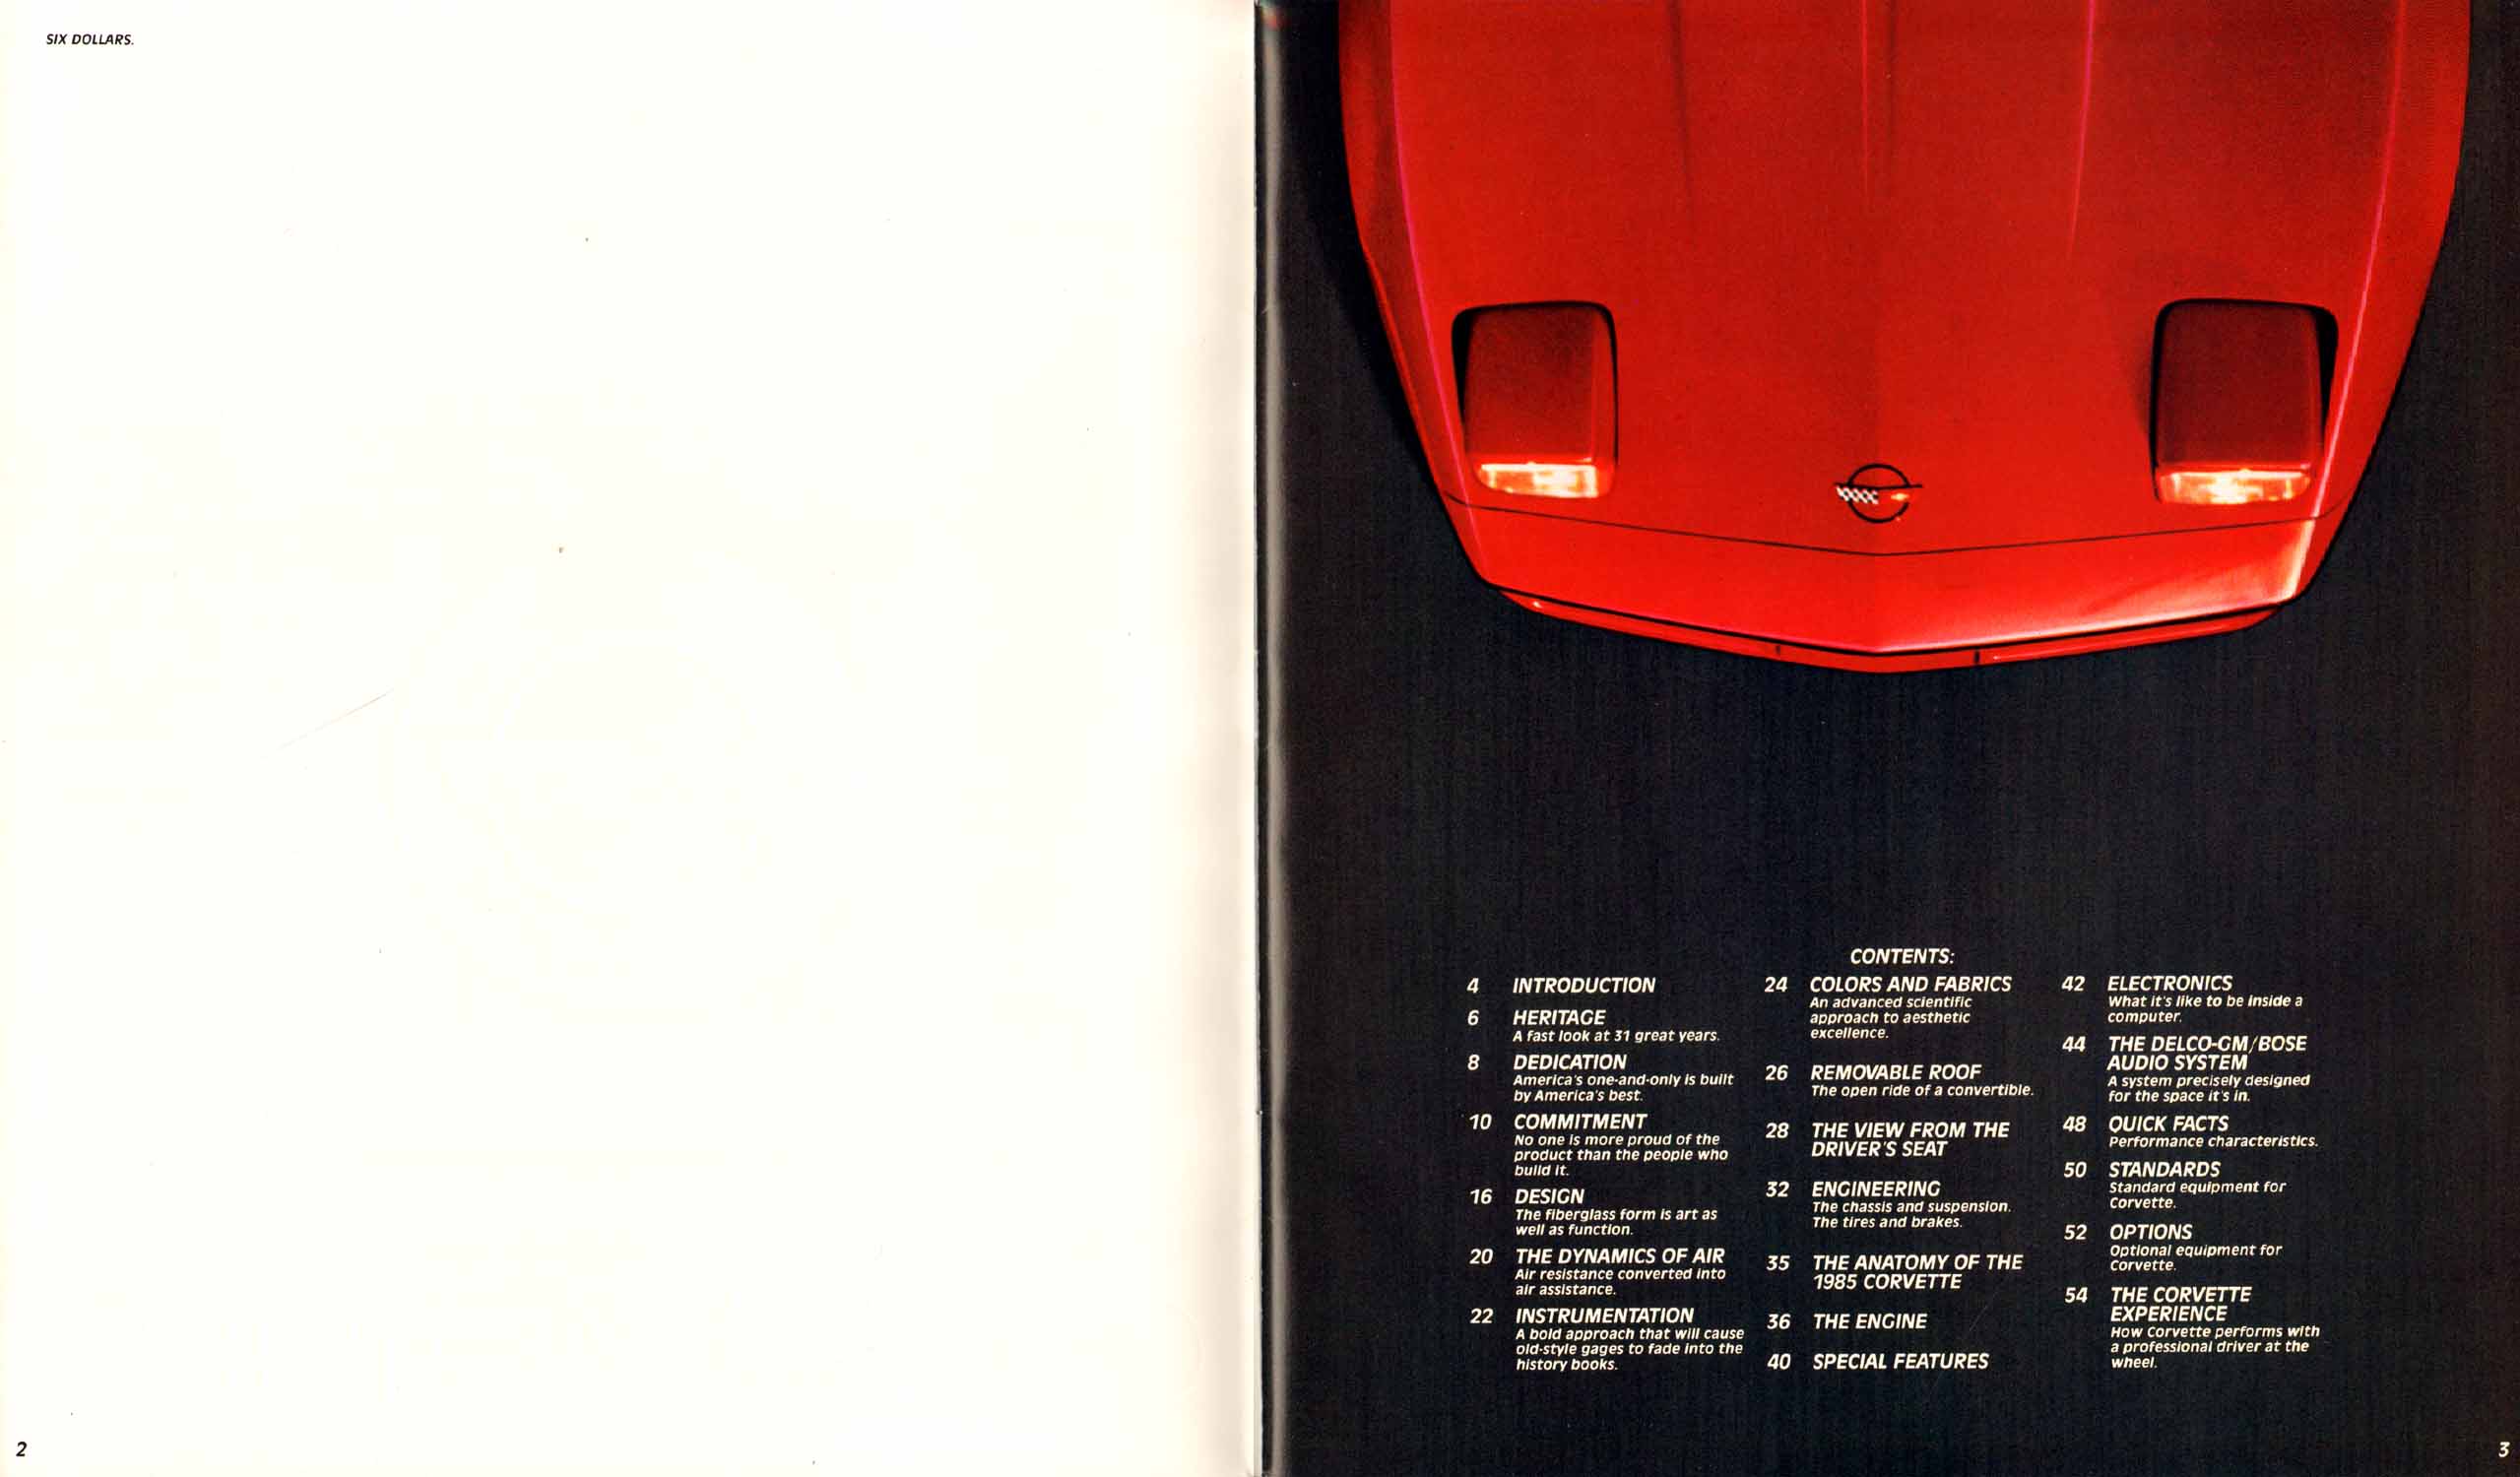 1985 Chevrolet Corvette-02-03